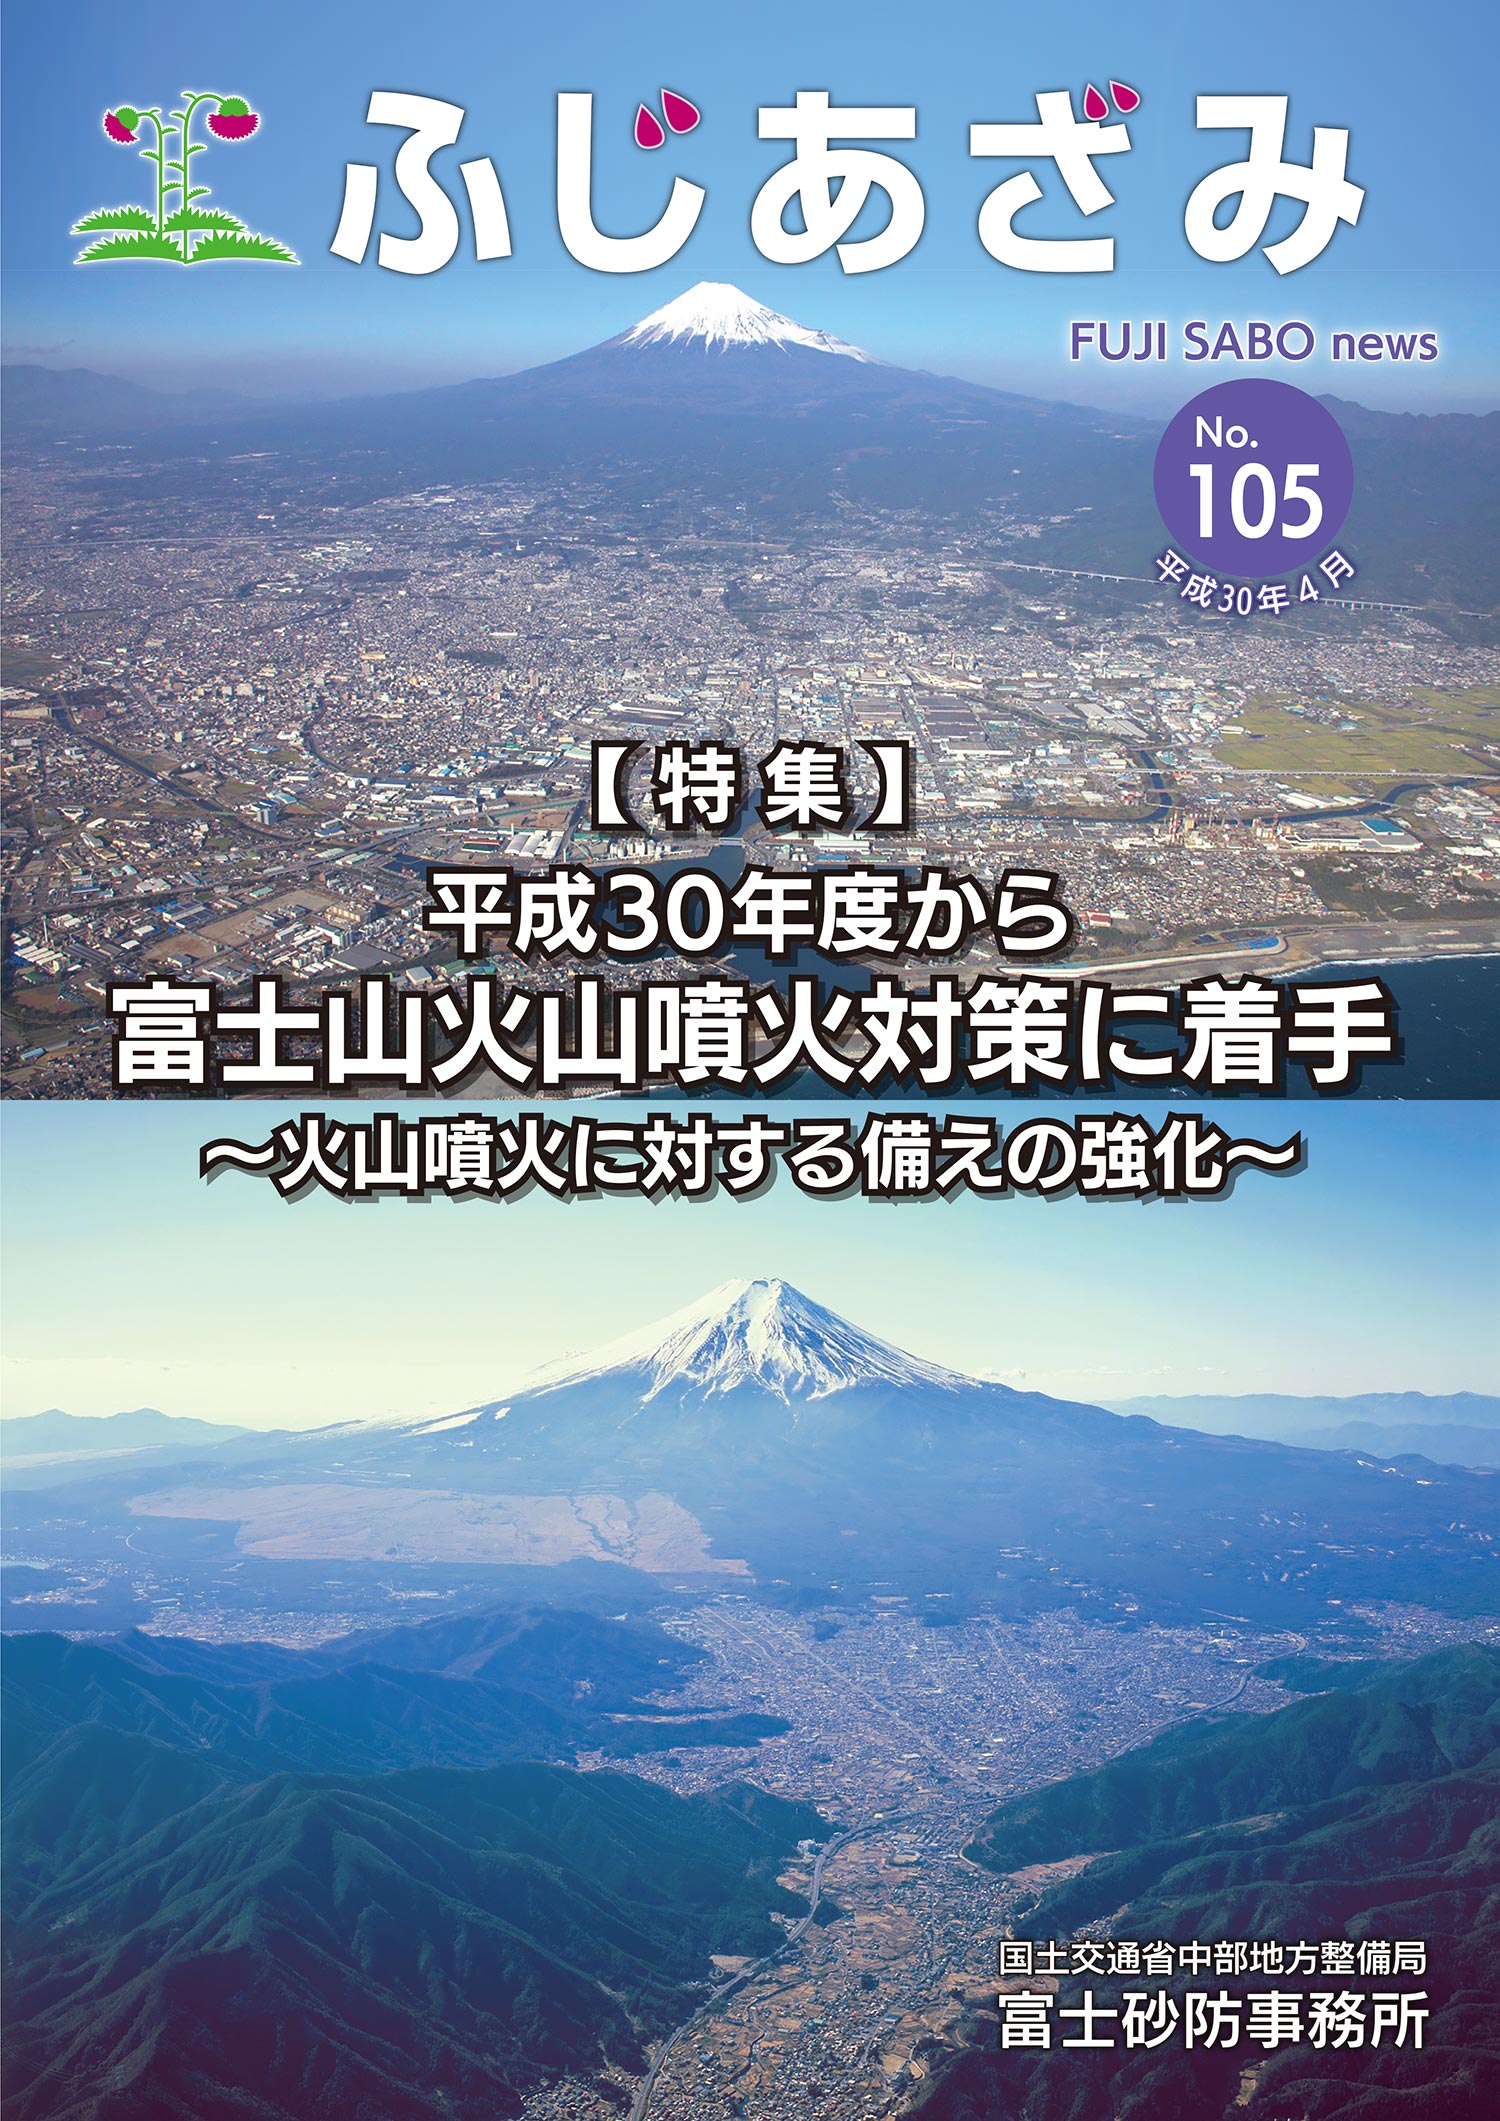 【特集】平成30年度から富士山火山噴火対策に着手〜火山噴火に対する備えの強化〜